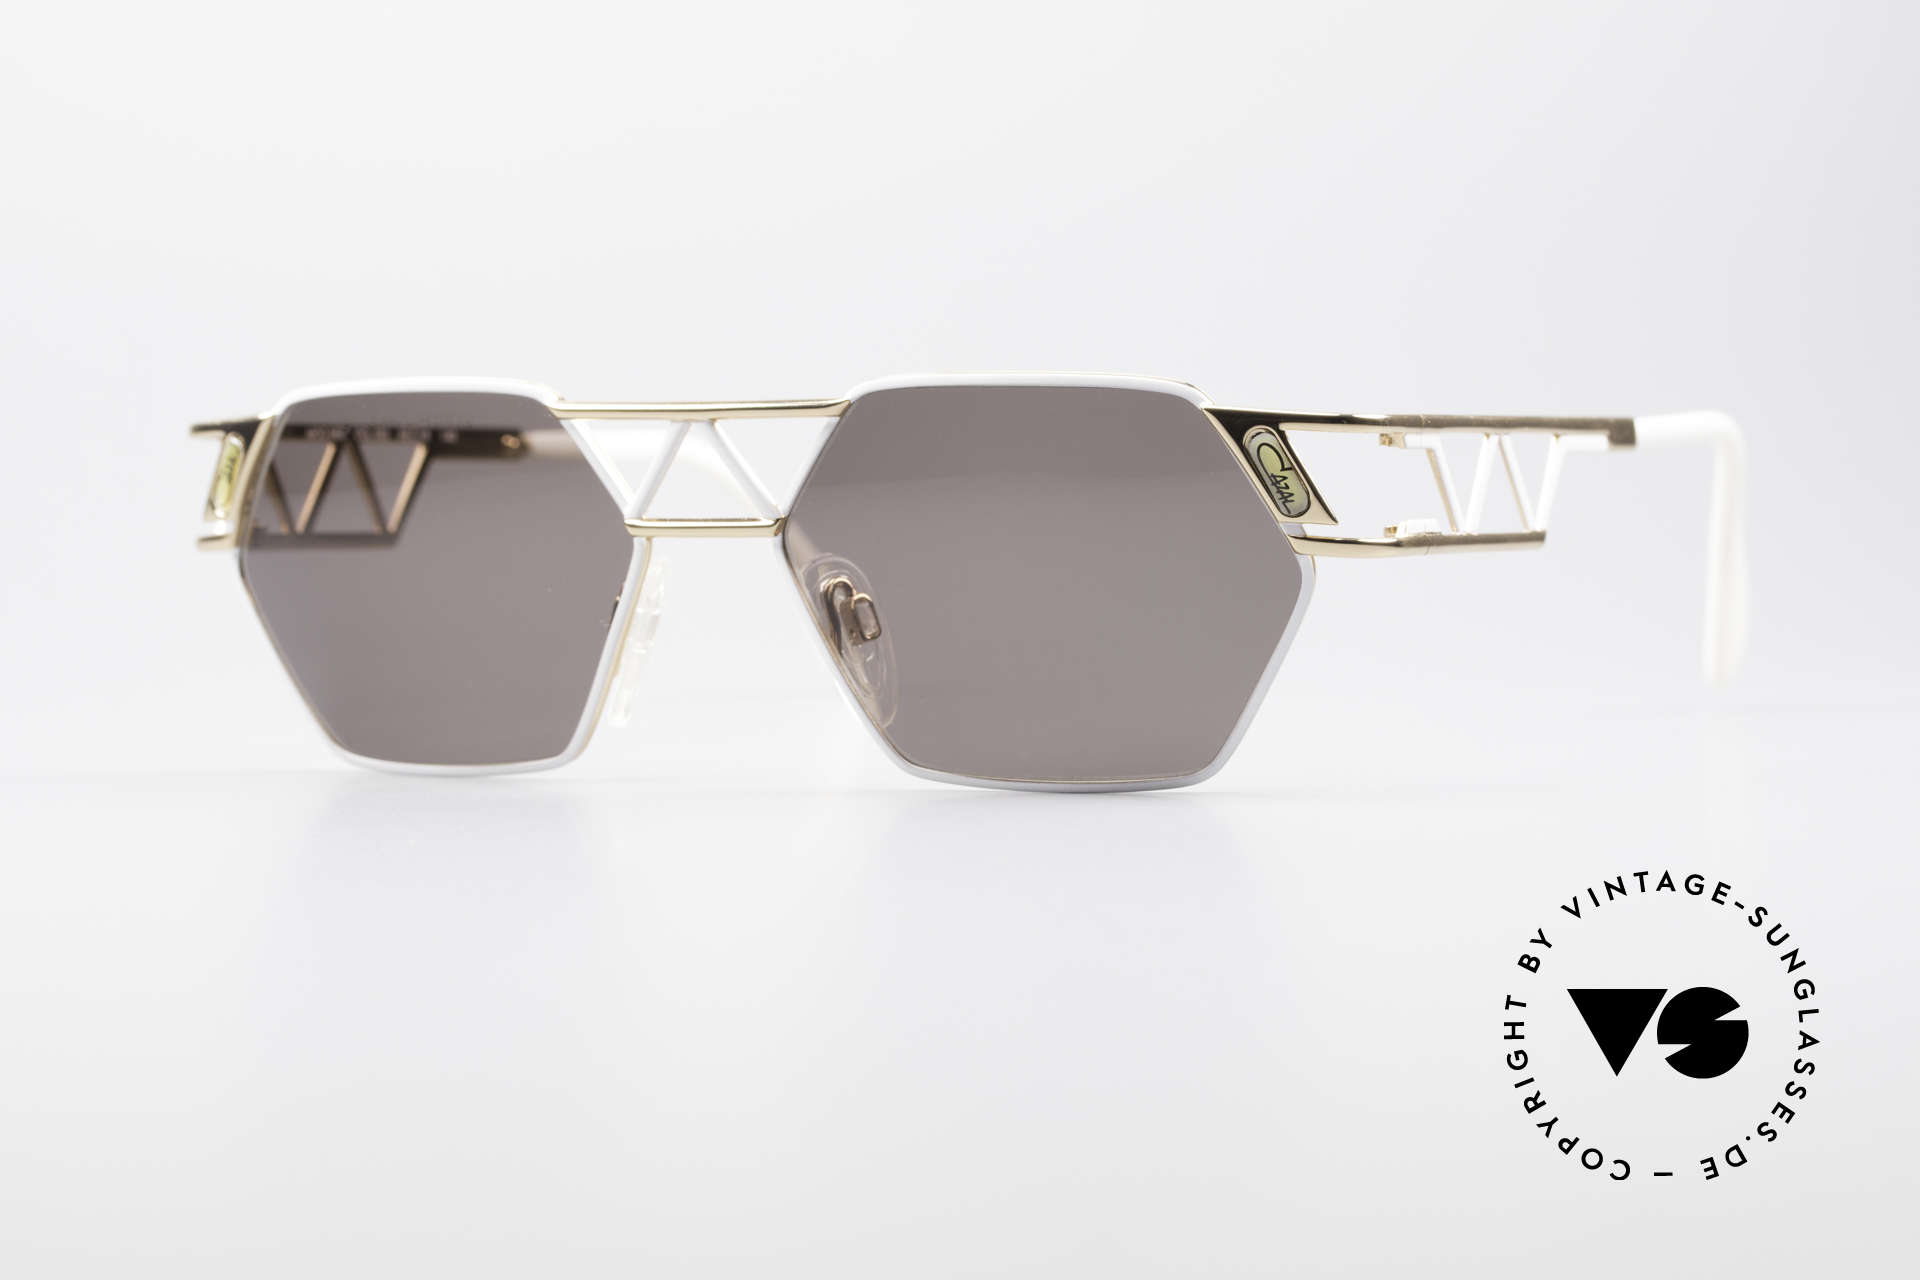 Cazal 960 Echte Designer Sonnenbrille, kantige Cazal Designersonnenbrille von circa 1994, Passend für Herren und Damen